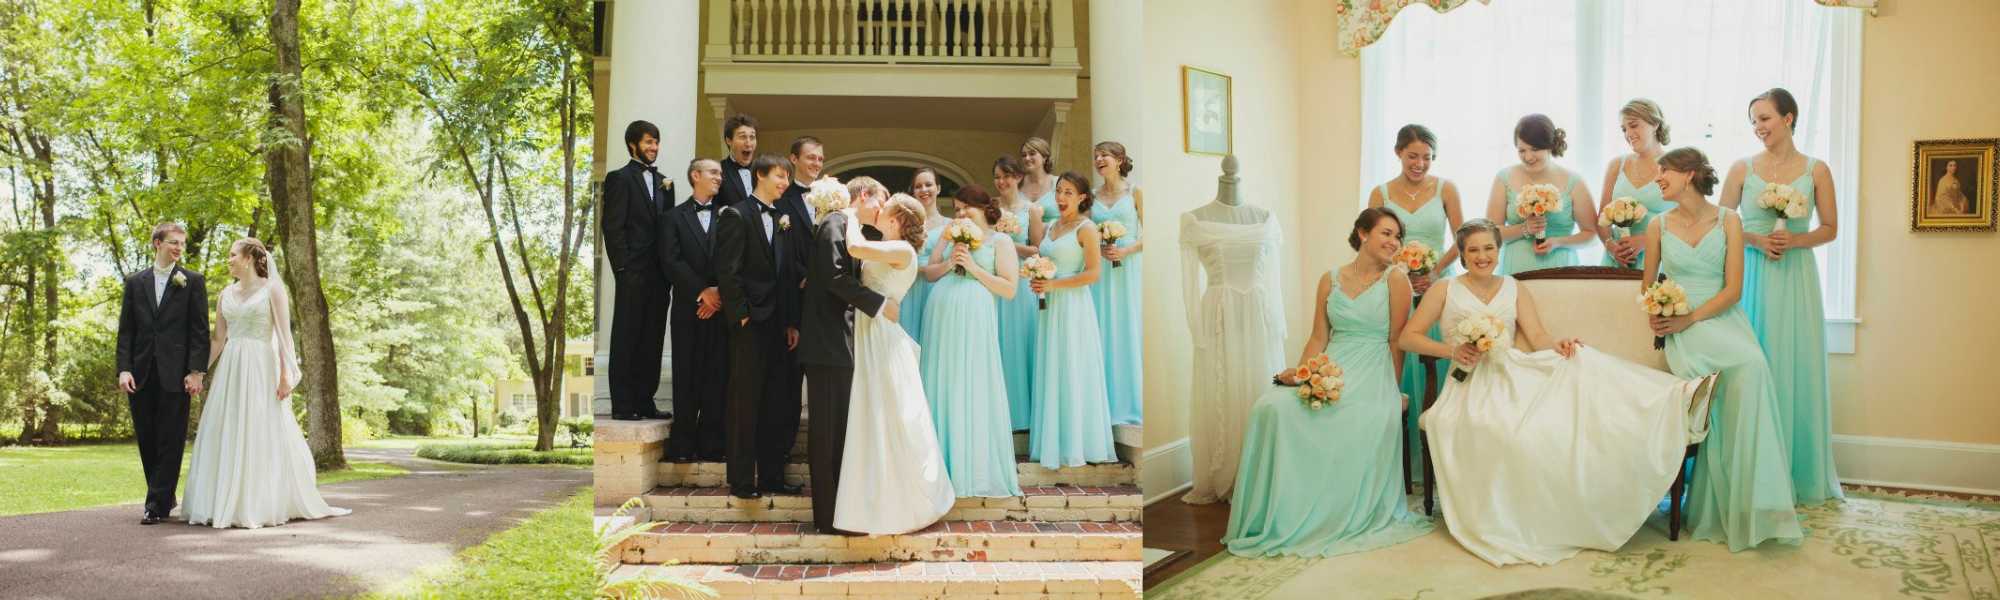 Wedding venue collage 